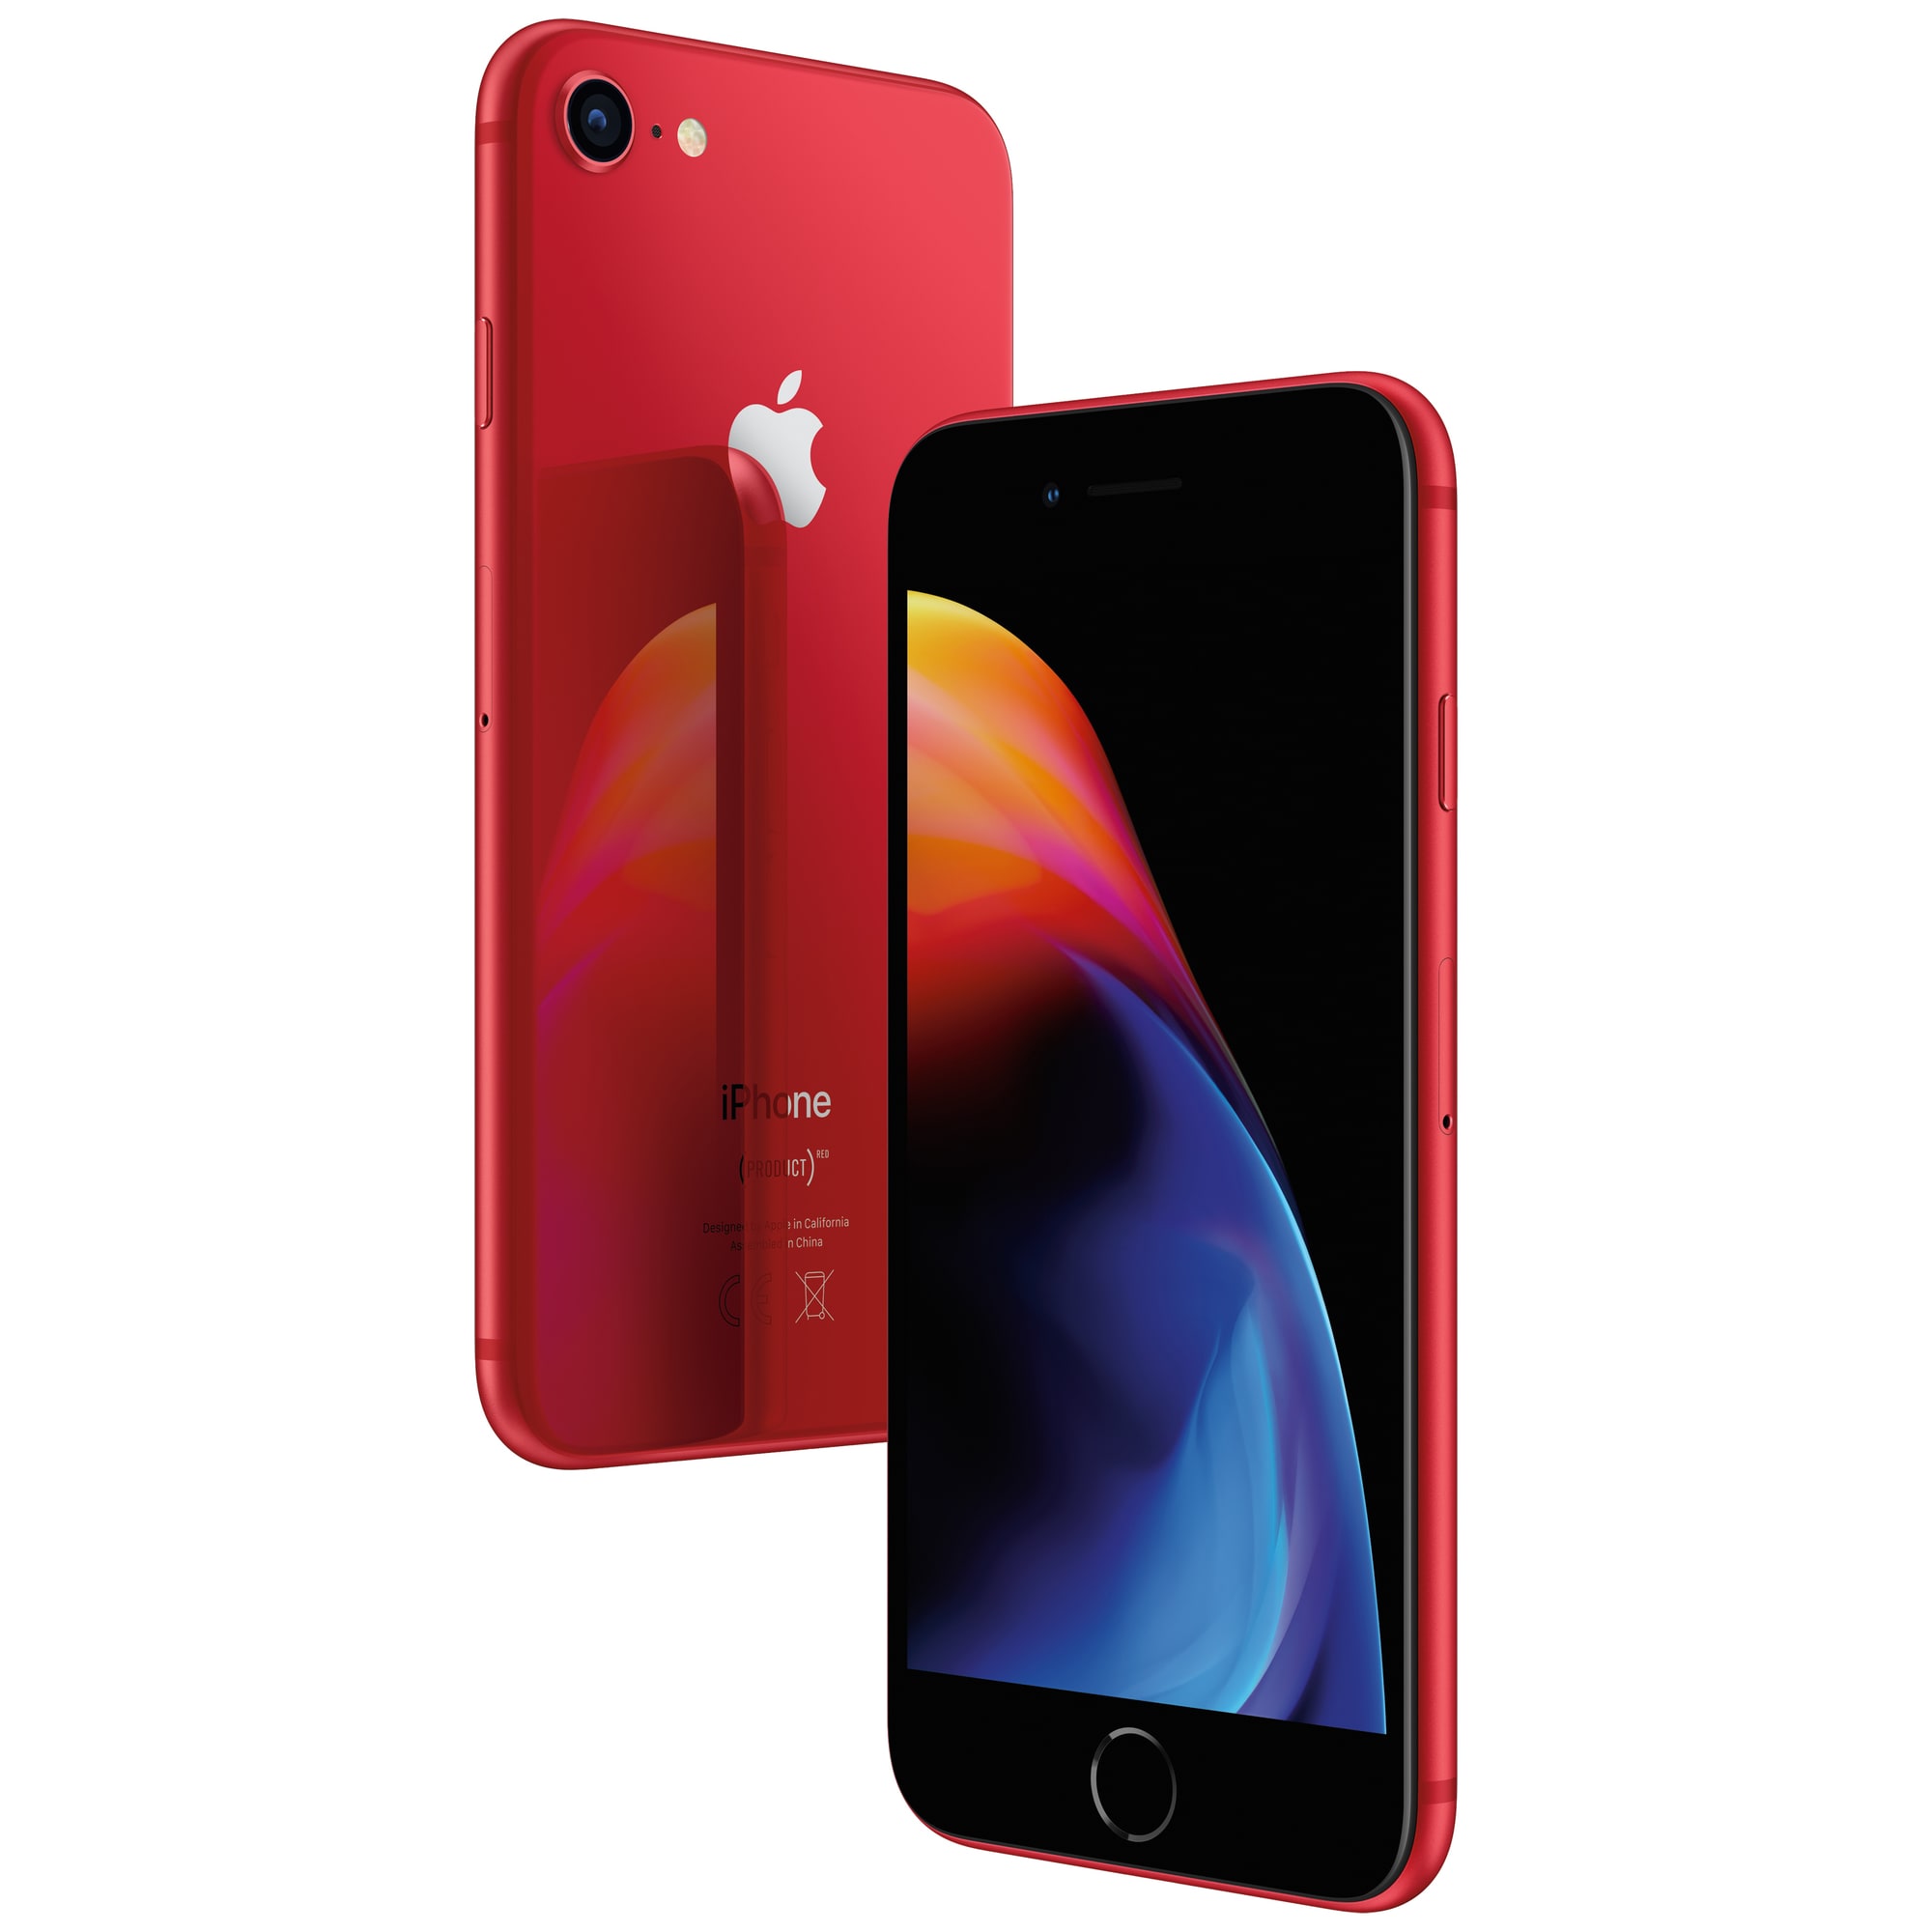 iPhone 8 64 GB (Product)RED | Elgiganten